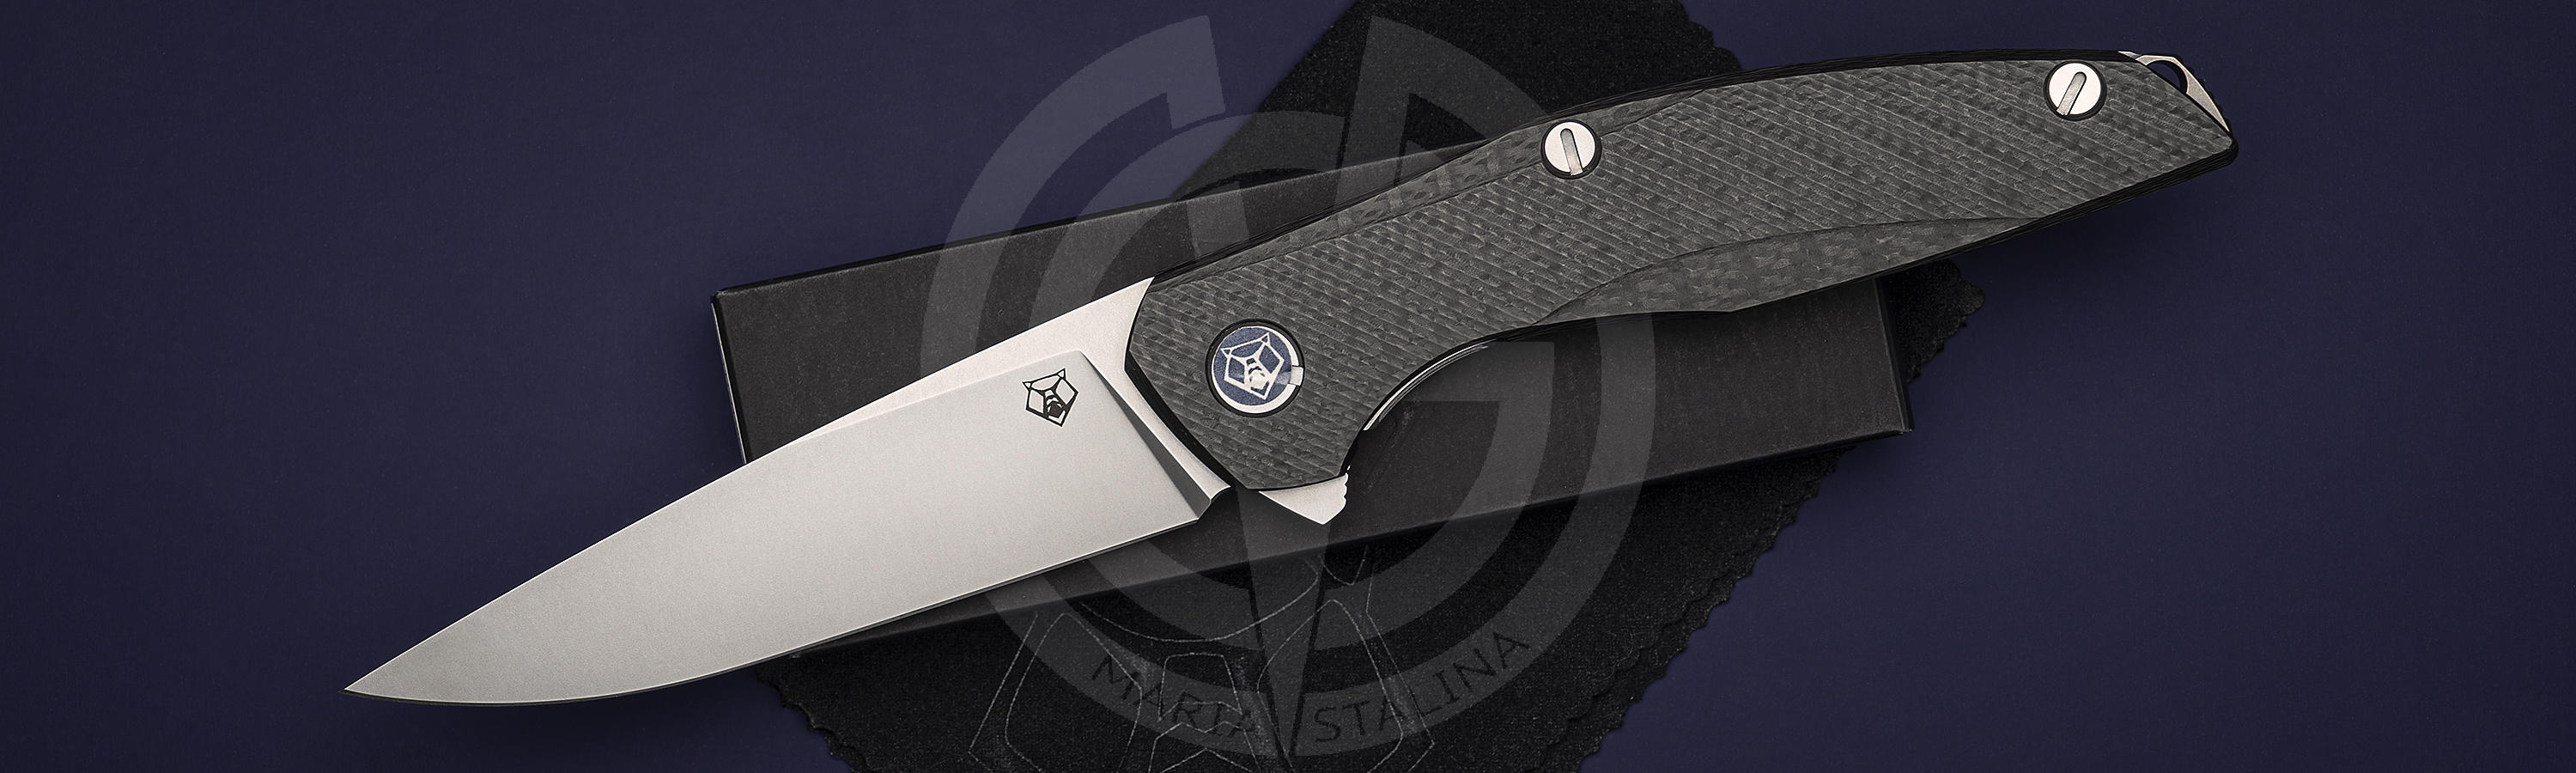 МБШ 111 М390 — отличный EDC-нож